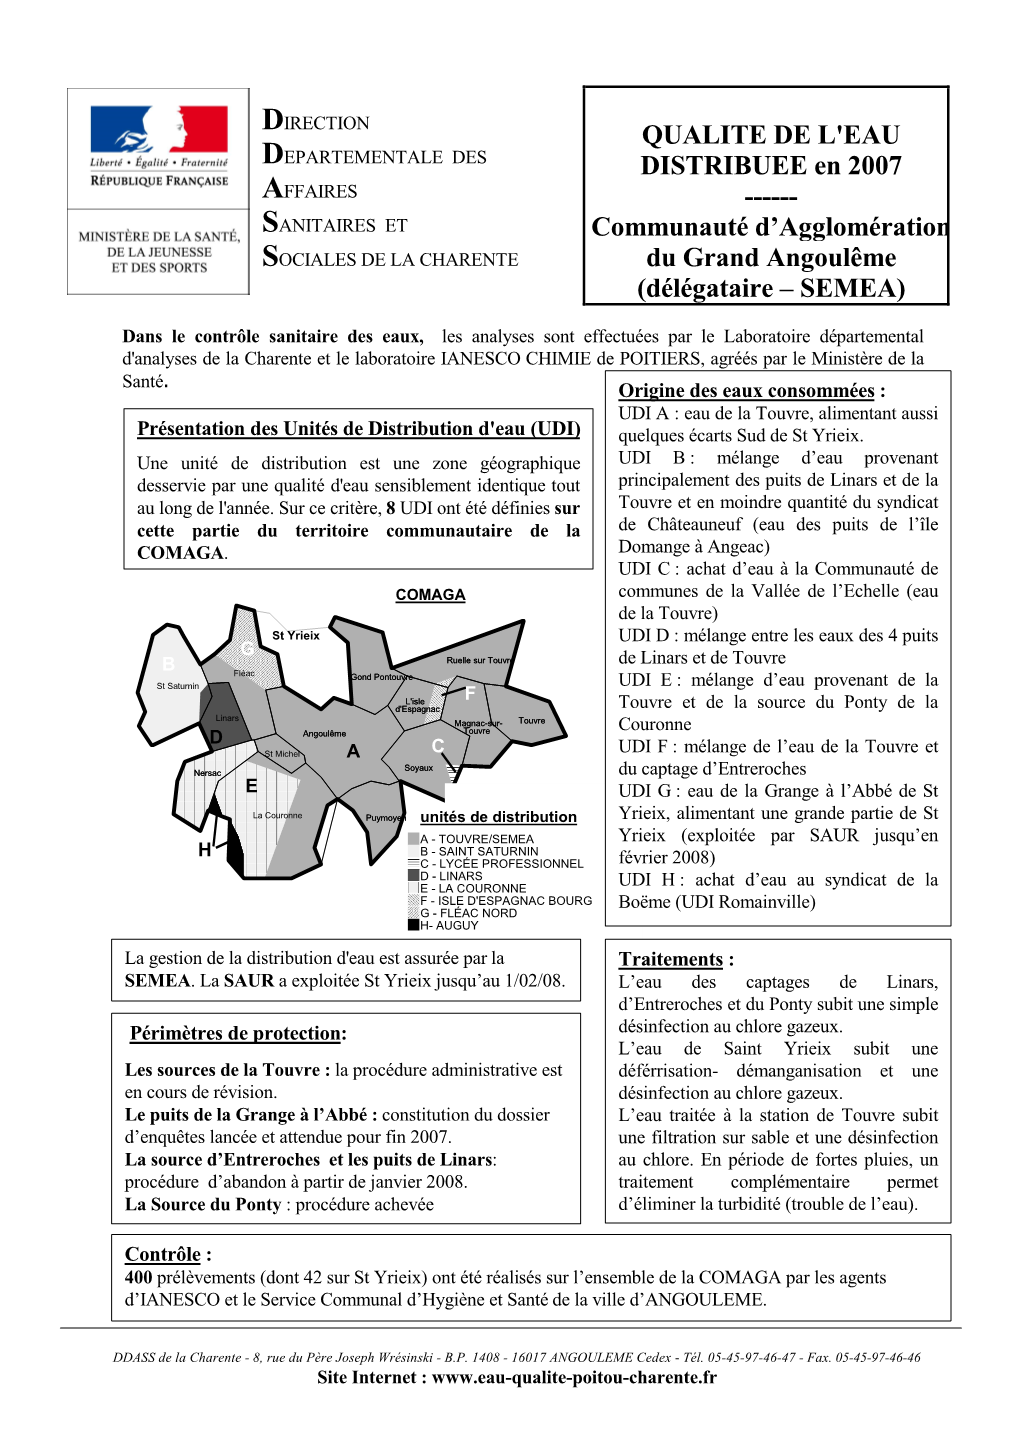 QUALITE DE L'eau DISTRIBUEE En 2007 ---Communauté D'agglomération Du Grand Angoulême (Délégataire – SEMEA)